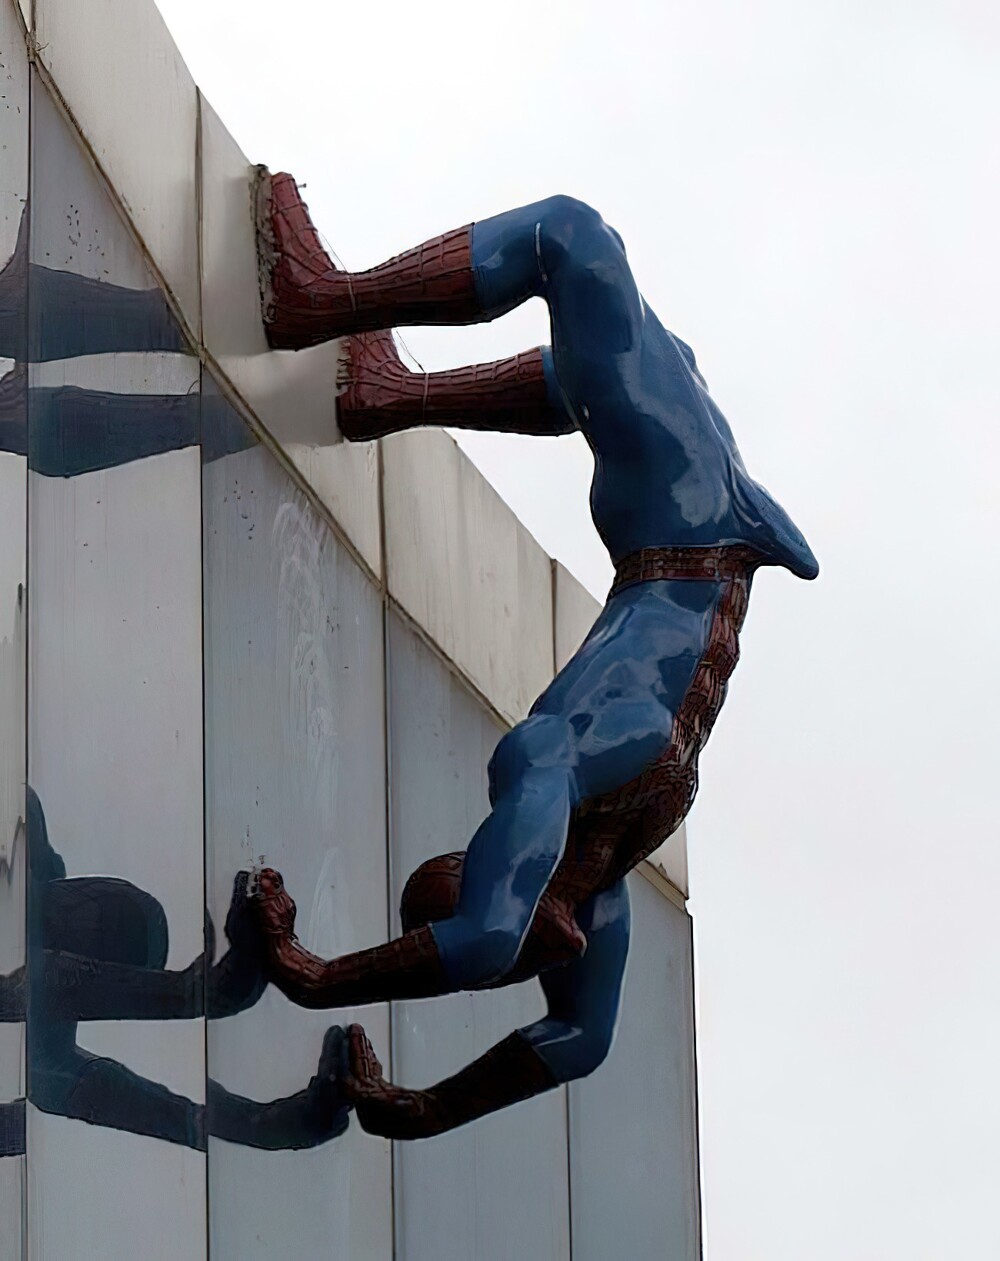 8. Южная Корея: Человек-паук от скульптора Ынсука Ю